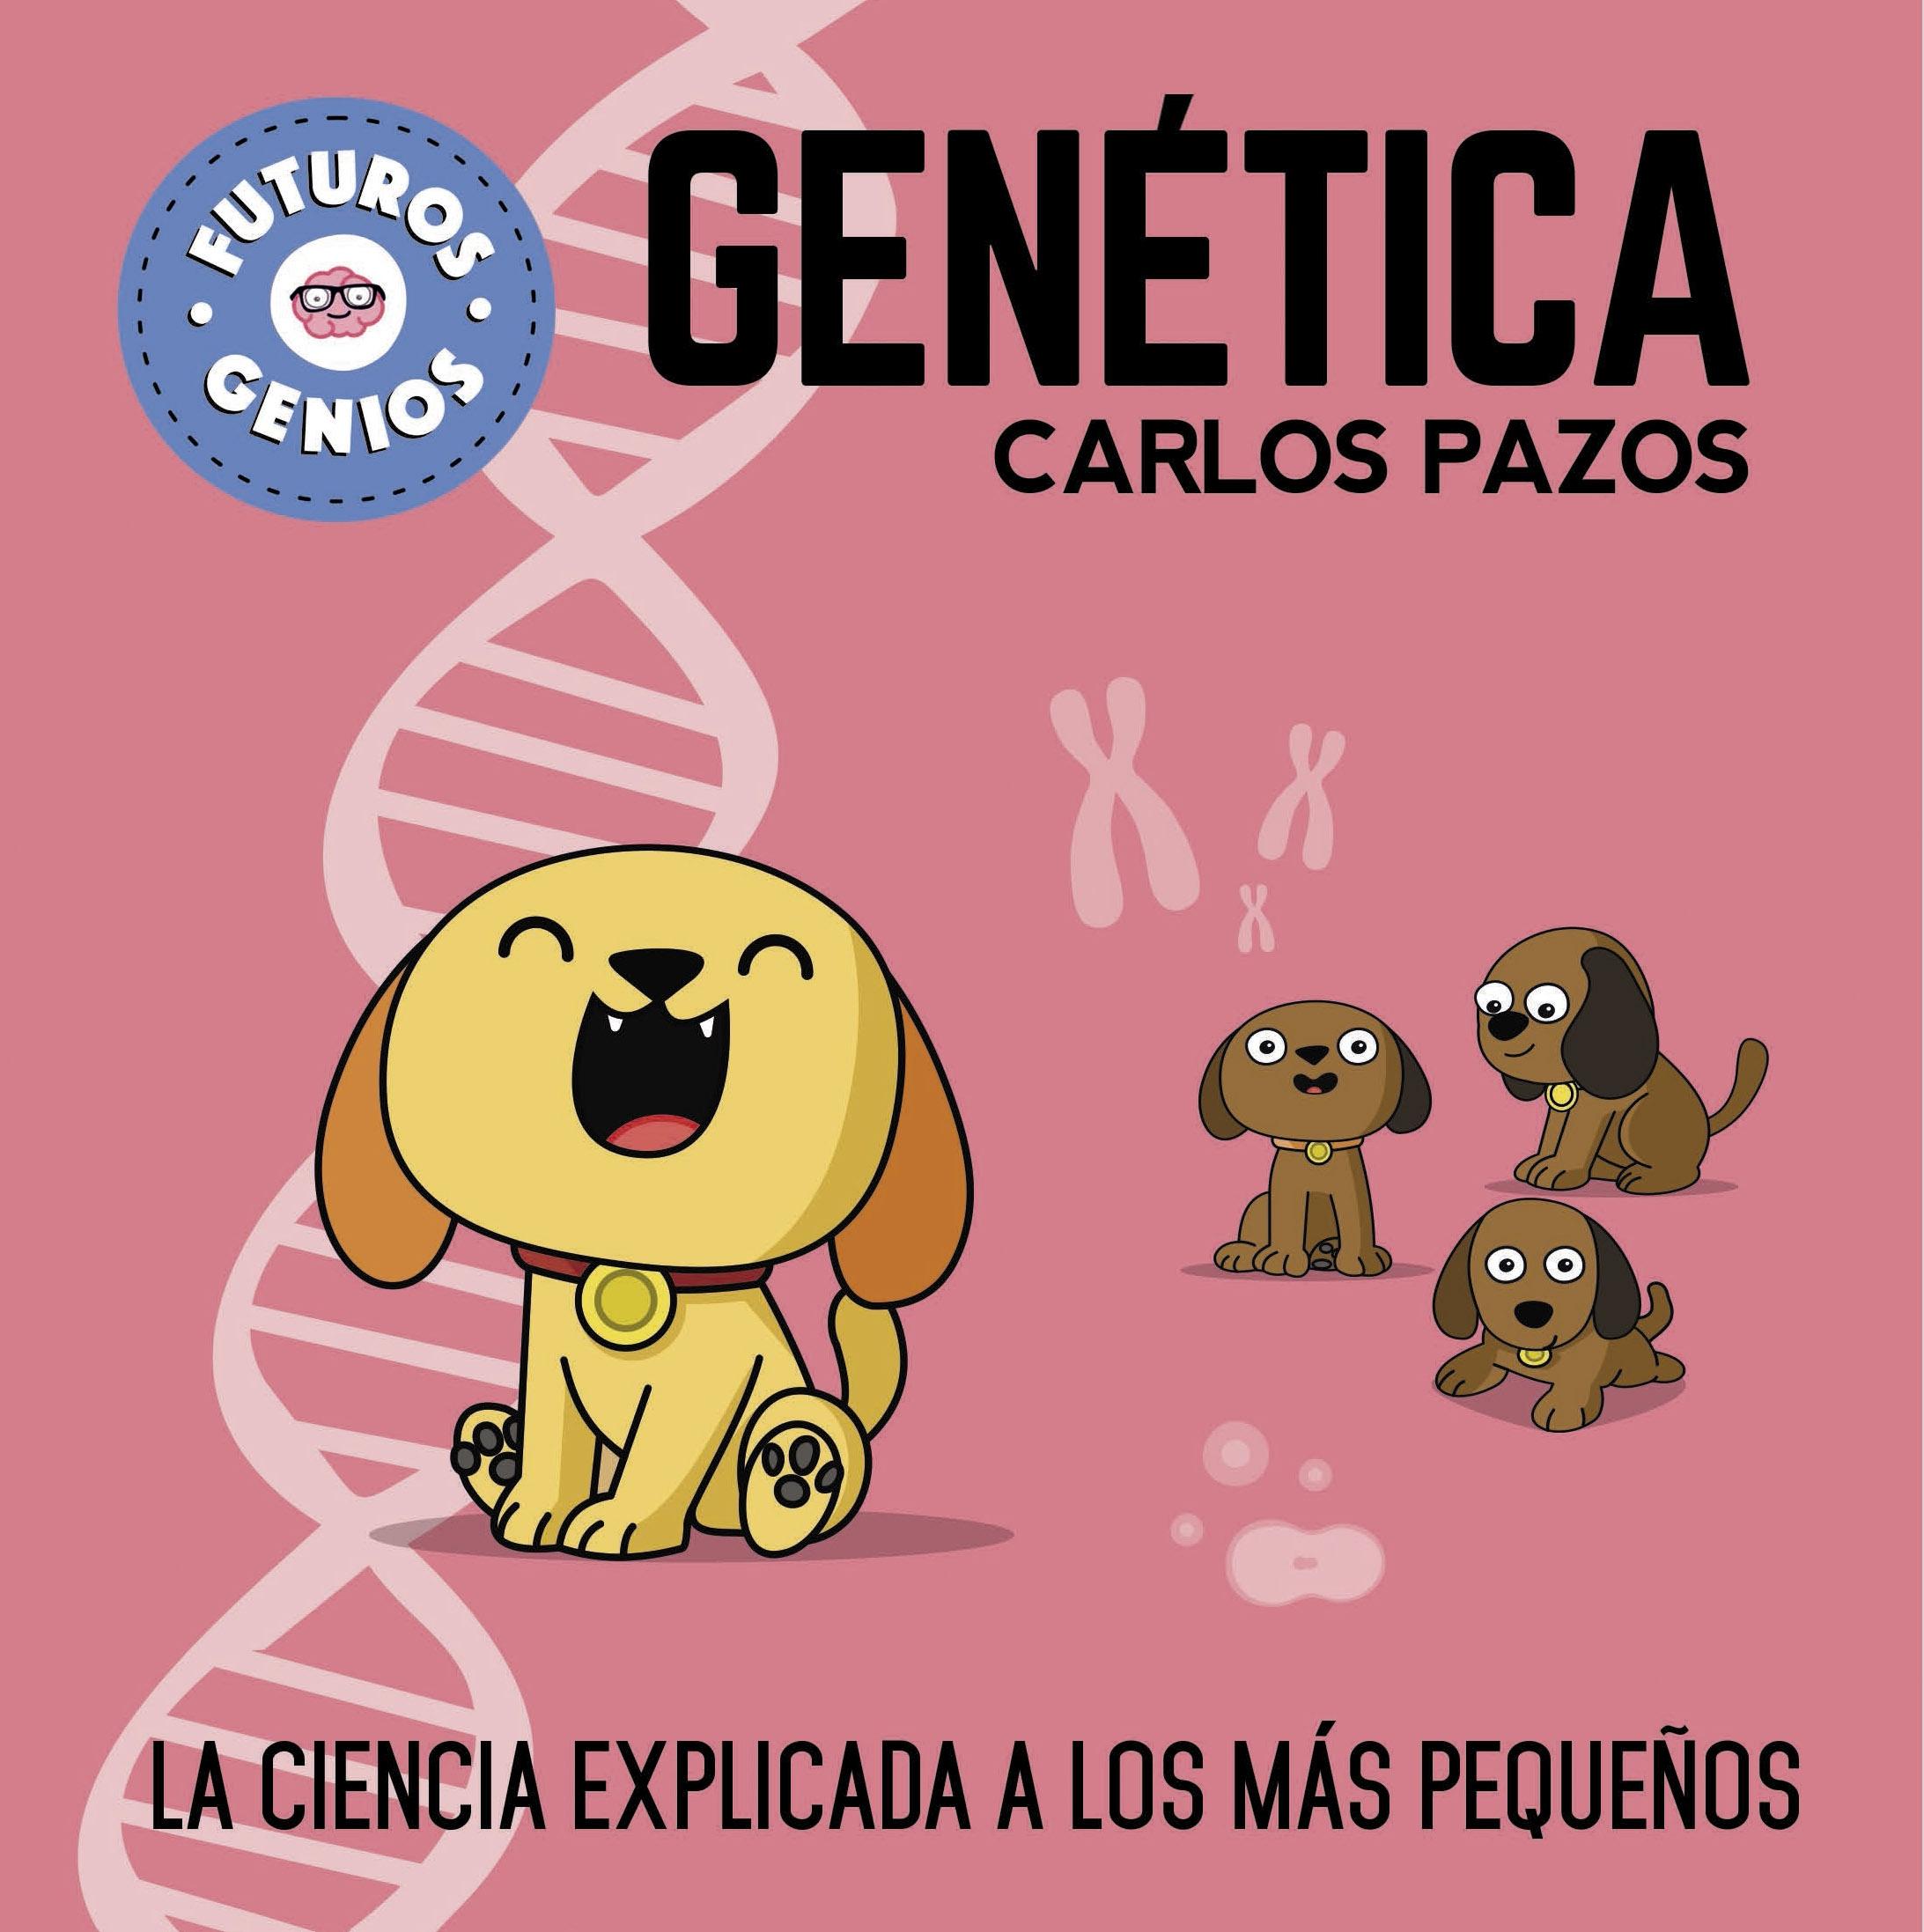 Genética (Futuros Genios) "La Ciencia Explicada a los Más Pequeños". 